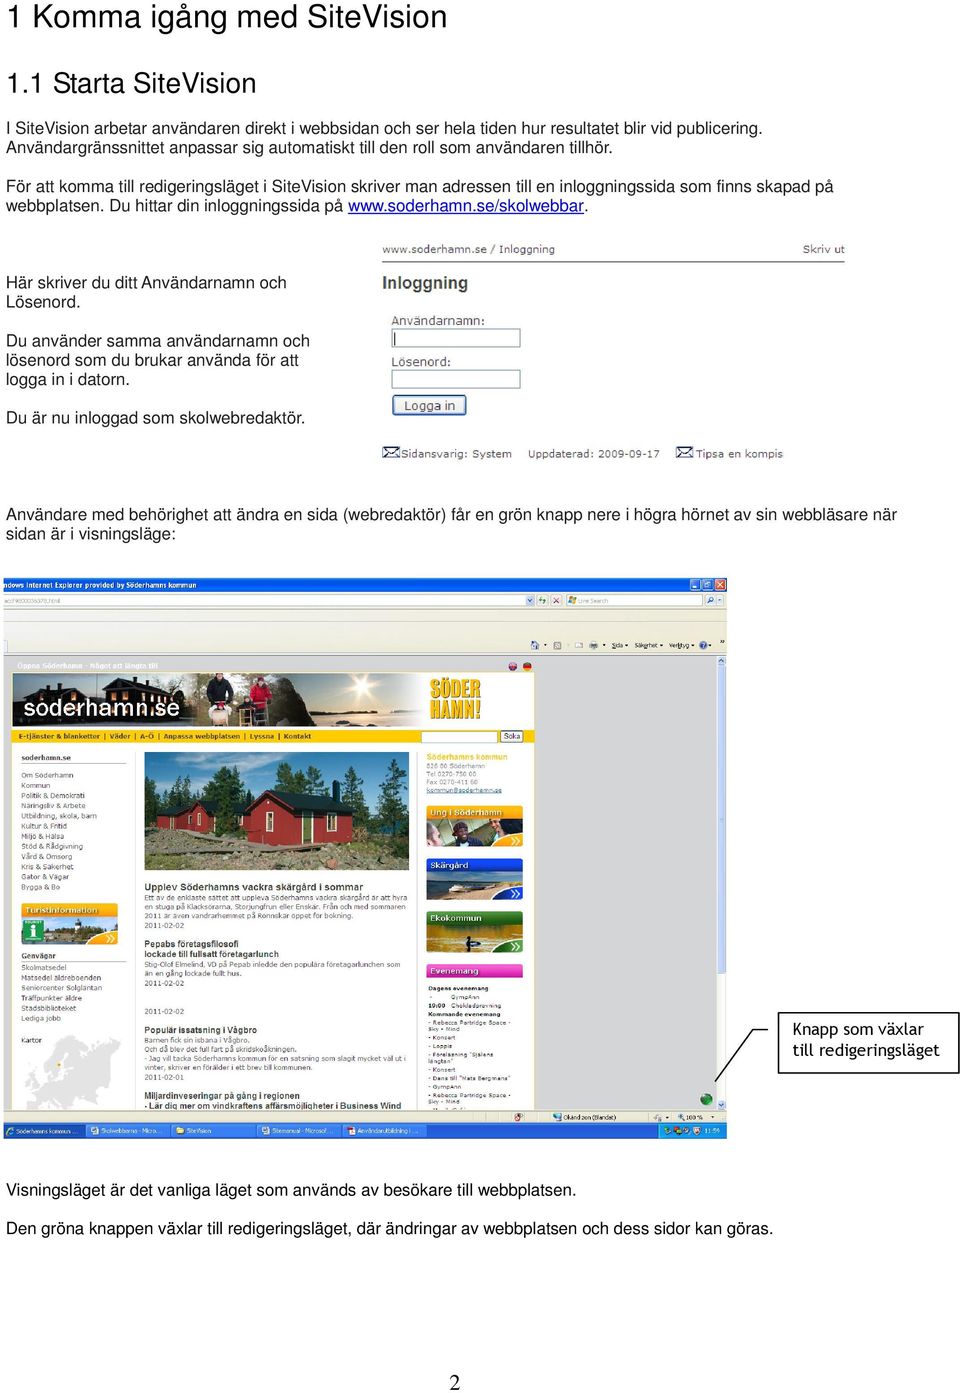 För att komma till redigeringsläget i SiteVision skriver man adressen till en inloggningssida som finns skapad på webbplatsen. Du hittar din inloggningssida på www.soderhamn.se/skolwebbar.